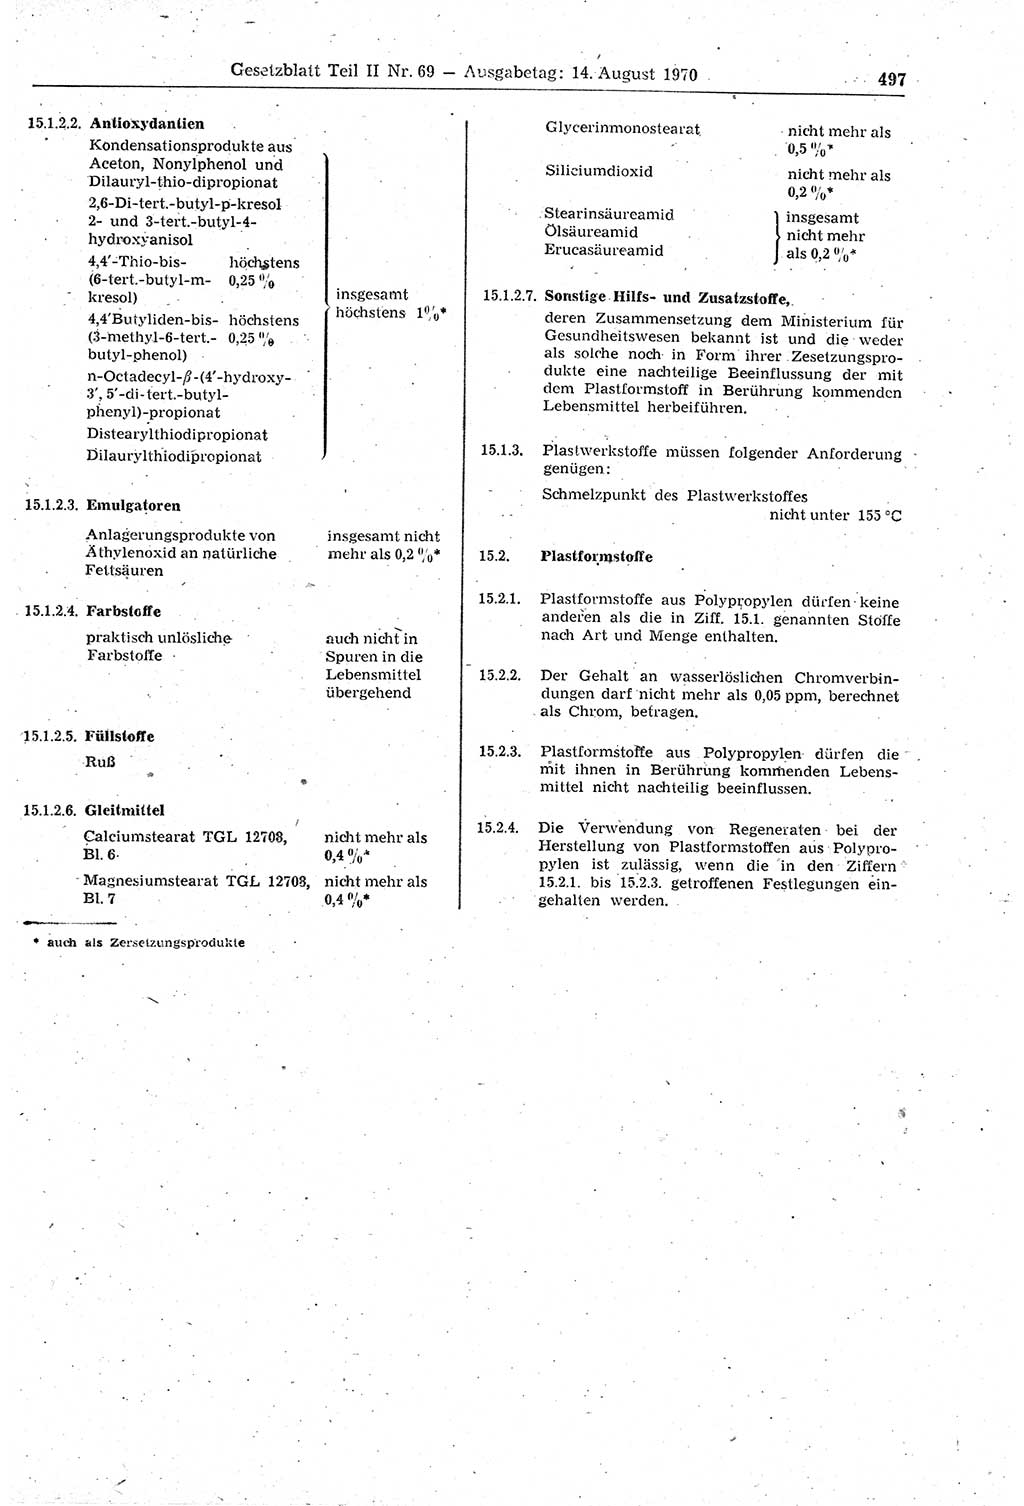 Gesetzblatt (GBl.) der Deutschen Demokratischen Republik (DDR) Teil ⅠⅠ 1970, Seite 497 (GBl. DDR ⅠⅠ 1970, S. 497)